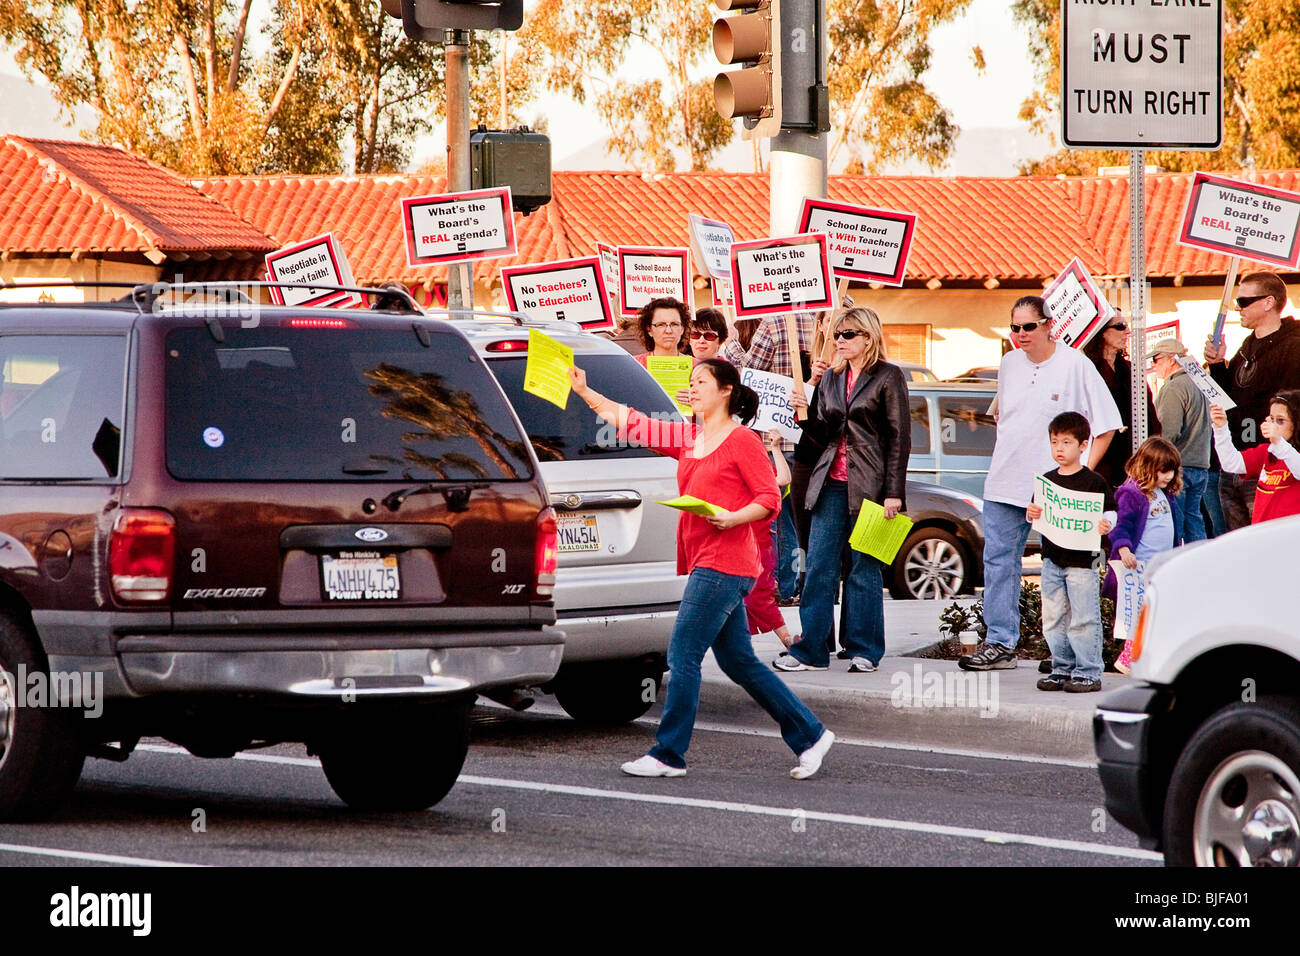 Stade des enseignants l'angle d'une rue piquet contre une réduction de salaire menacée par le conseil scolaire de la ville de Mission Viejo, en Californie. Banque D'Images